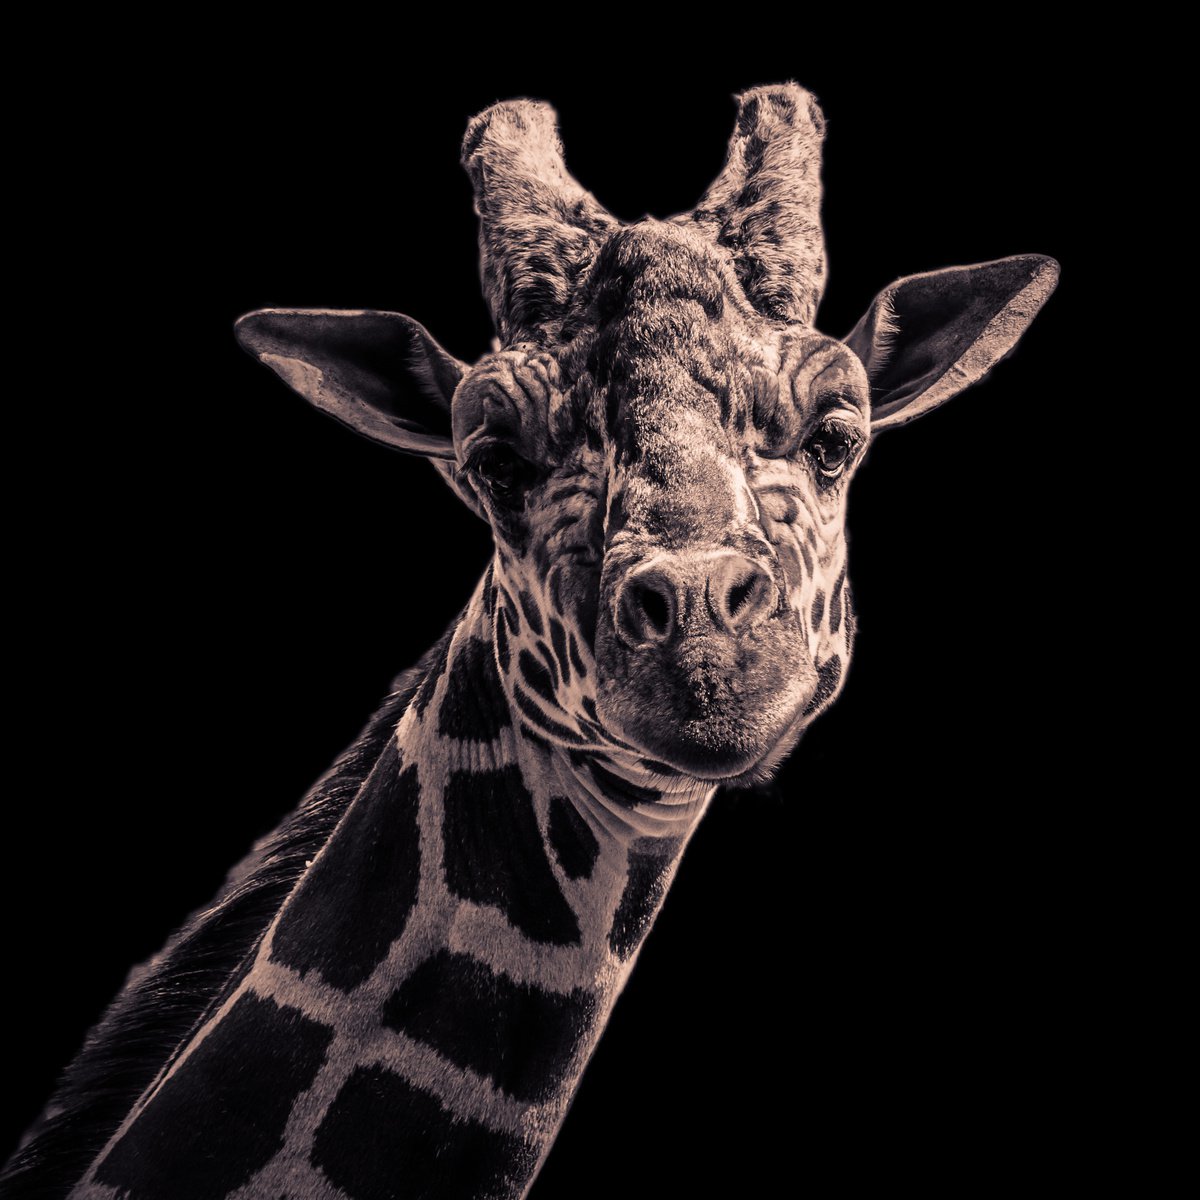 Giraffe by Vlad Durniev